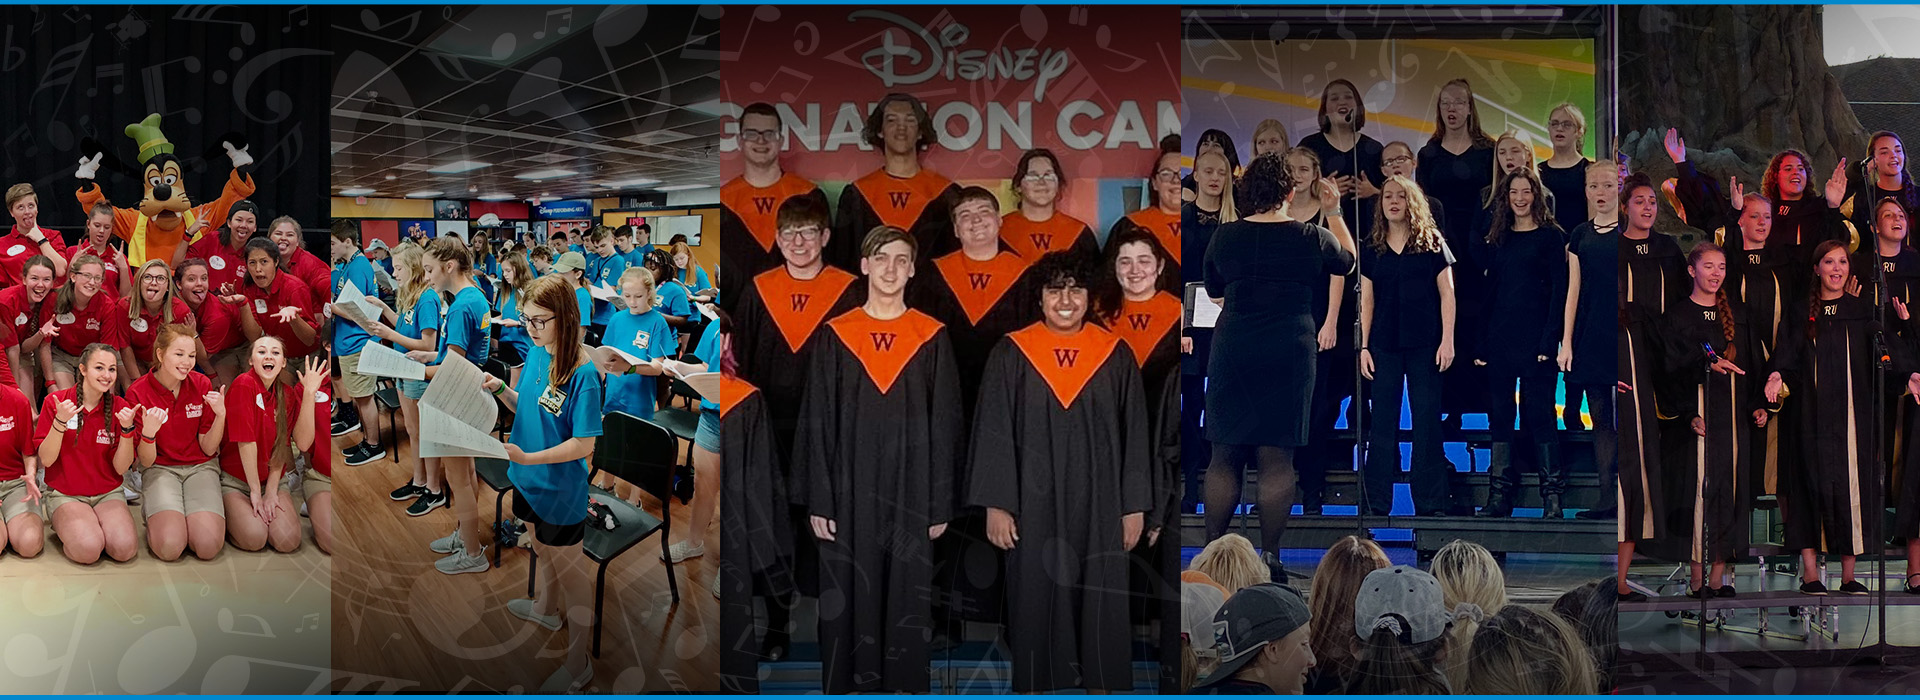 Disney Imagination Campus choir tours